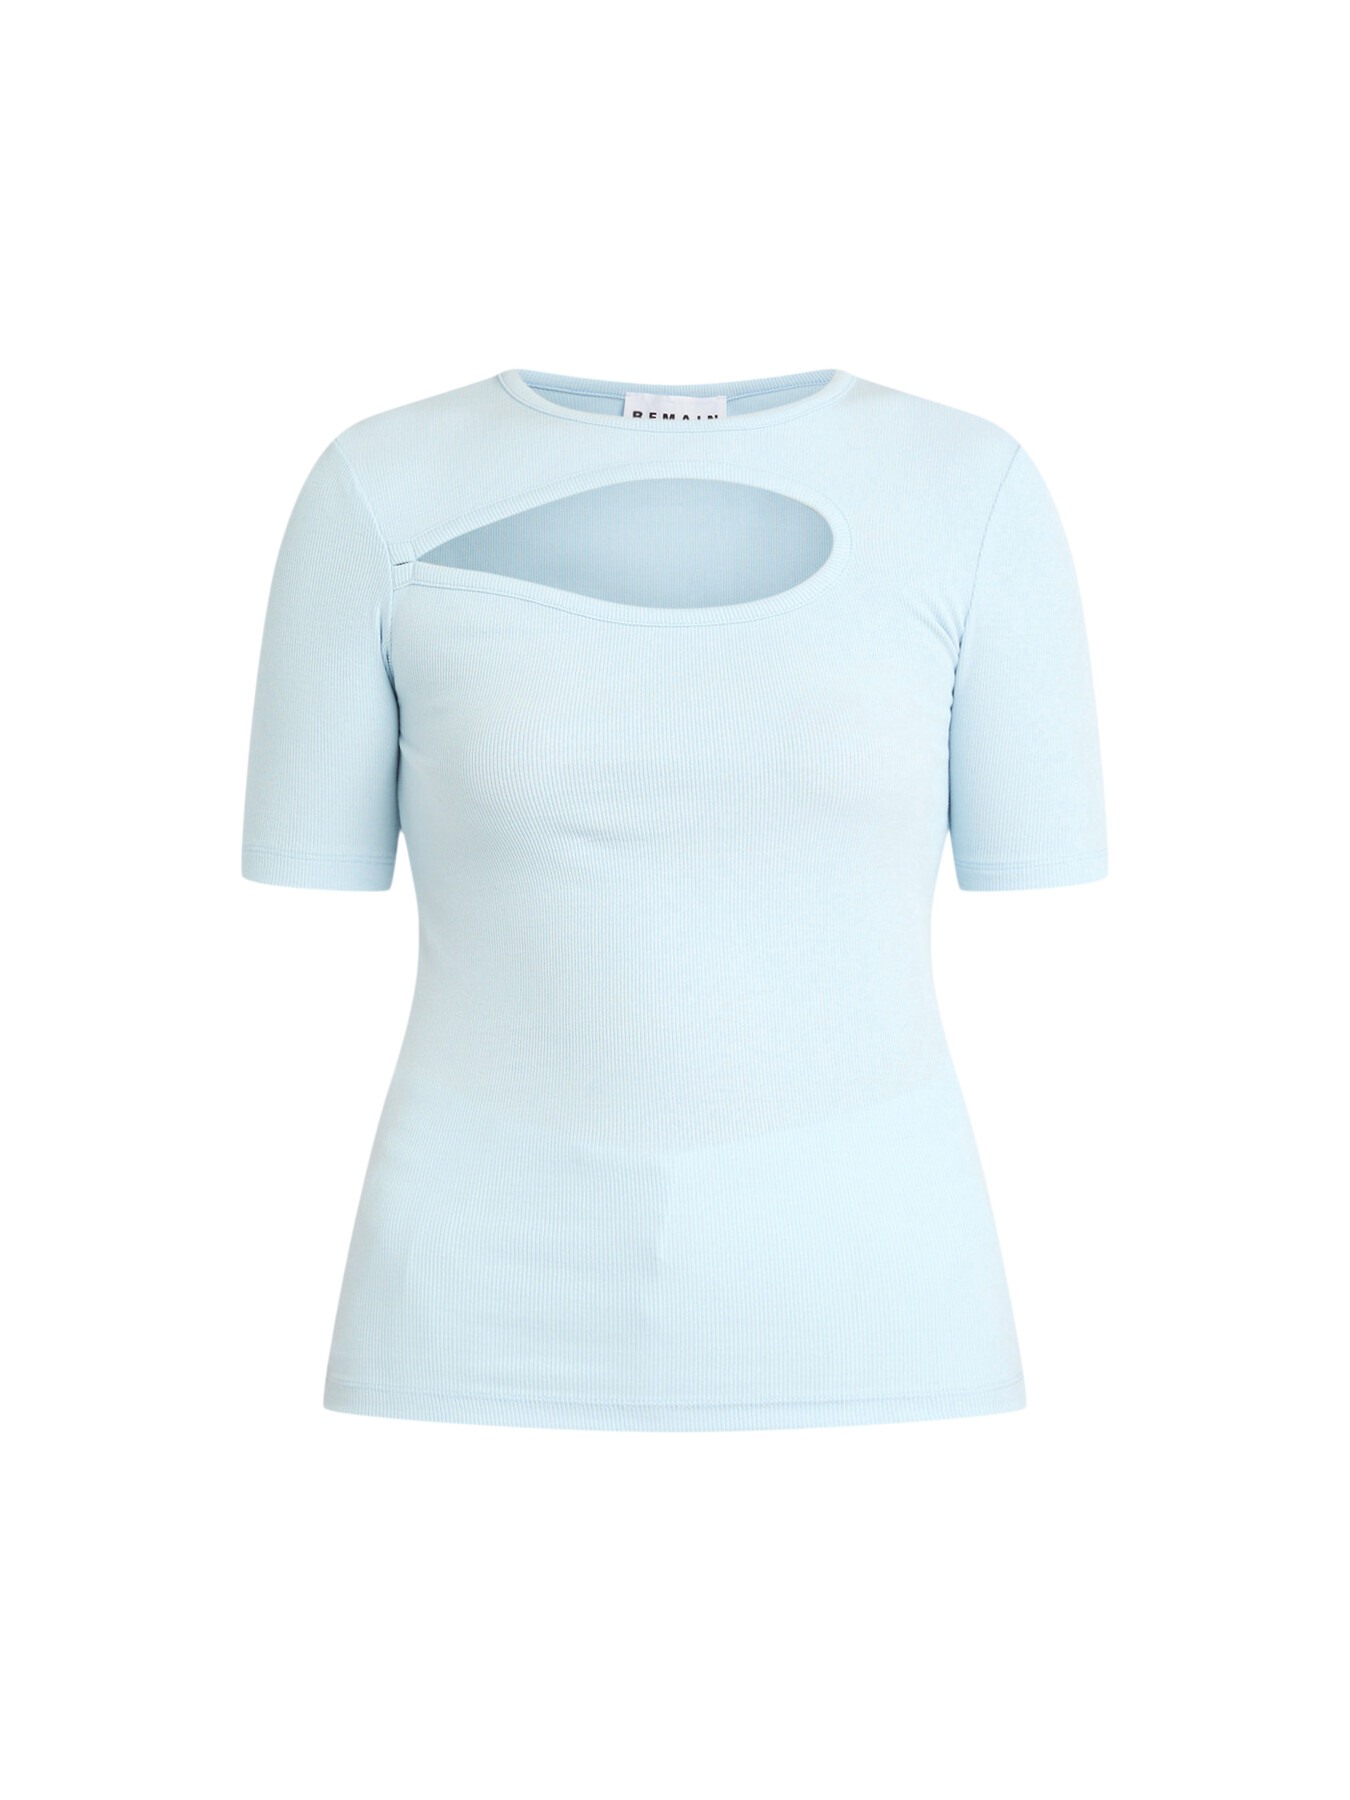 Remain Birger Christensen Women's Jersey Short Sleeve T-shirt